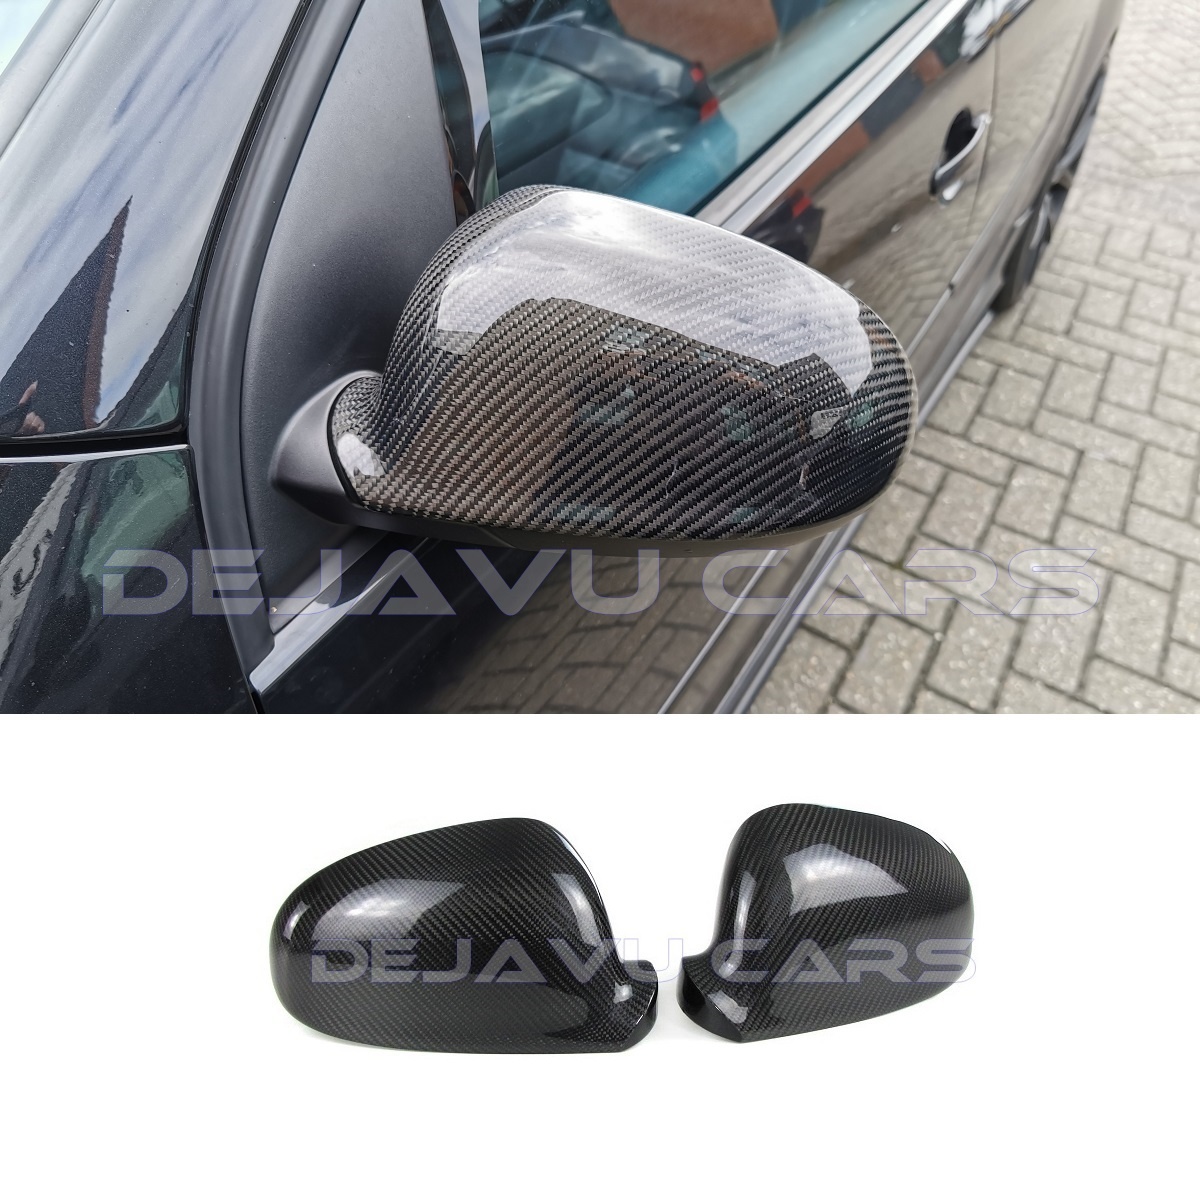 Echt Carbon Spiegelkappen Aussenspiegel Cover passt Audi R8 4S TT